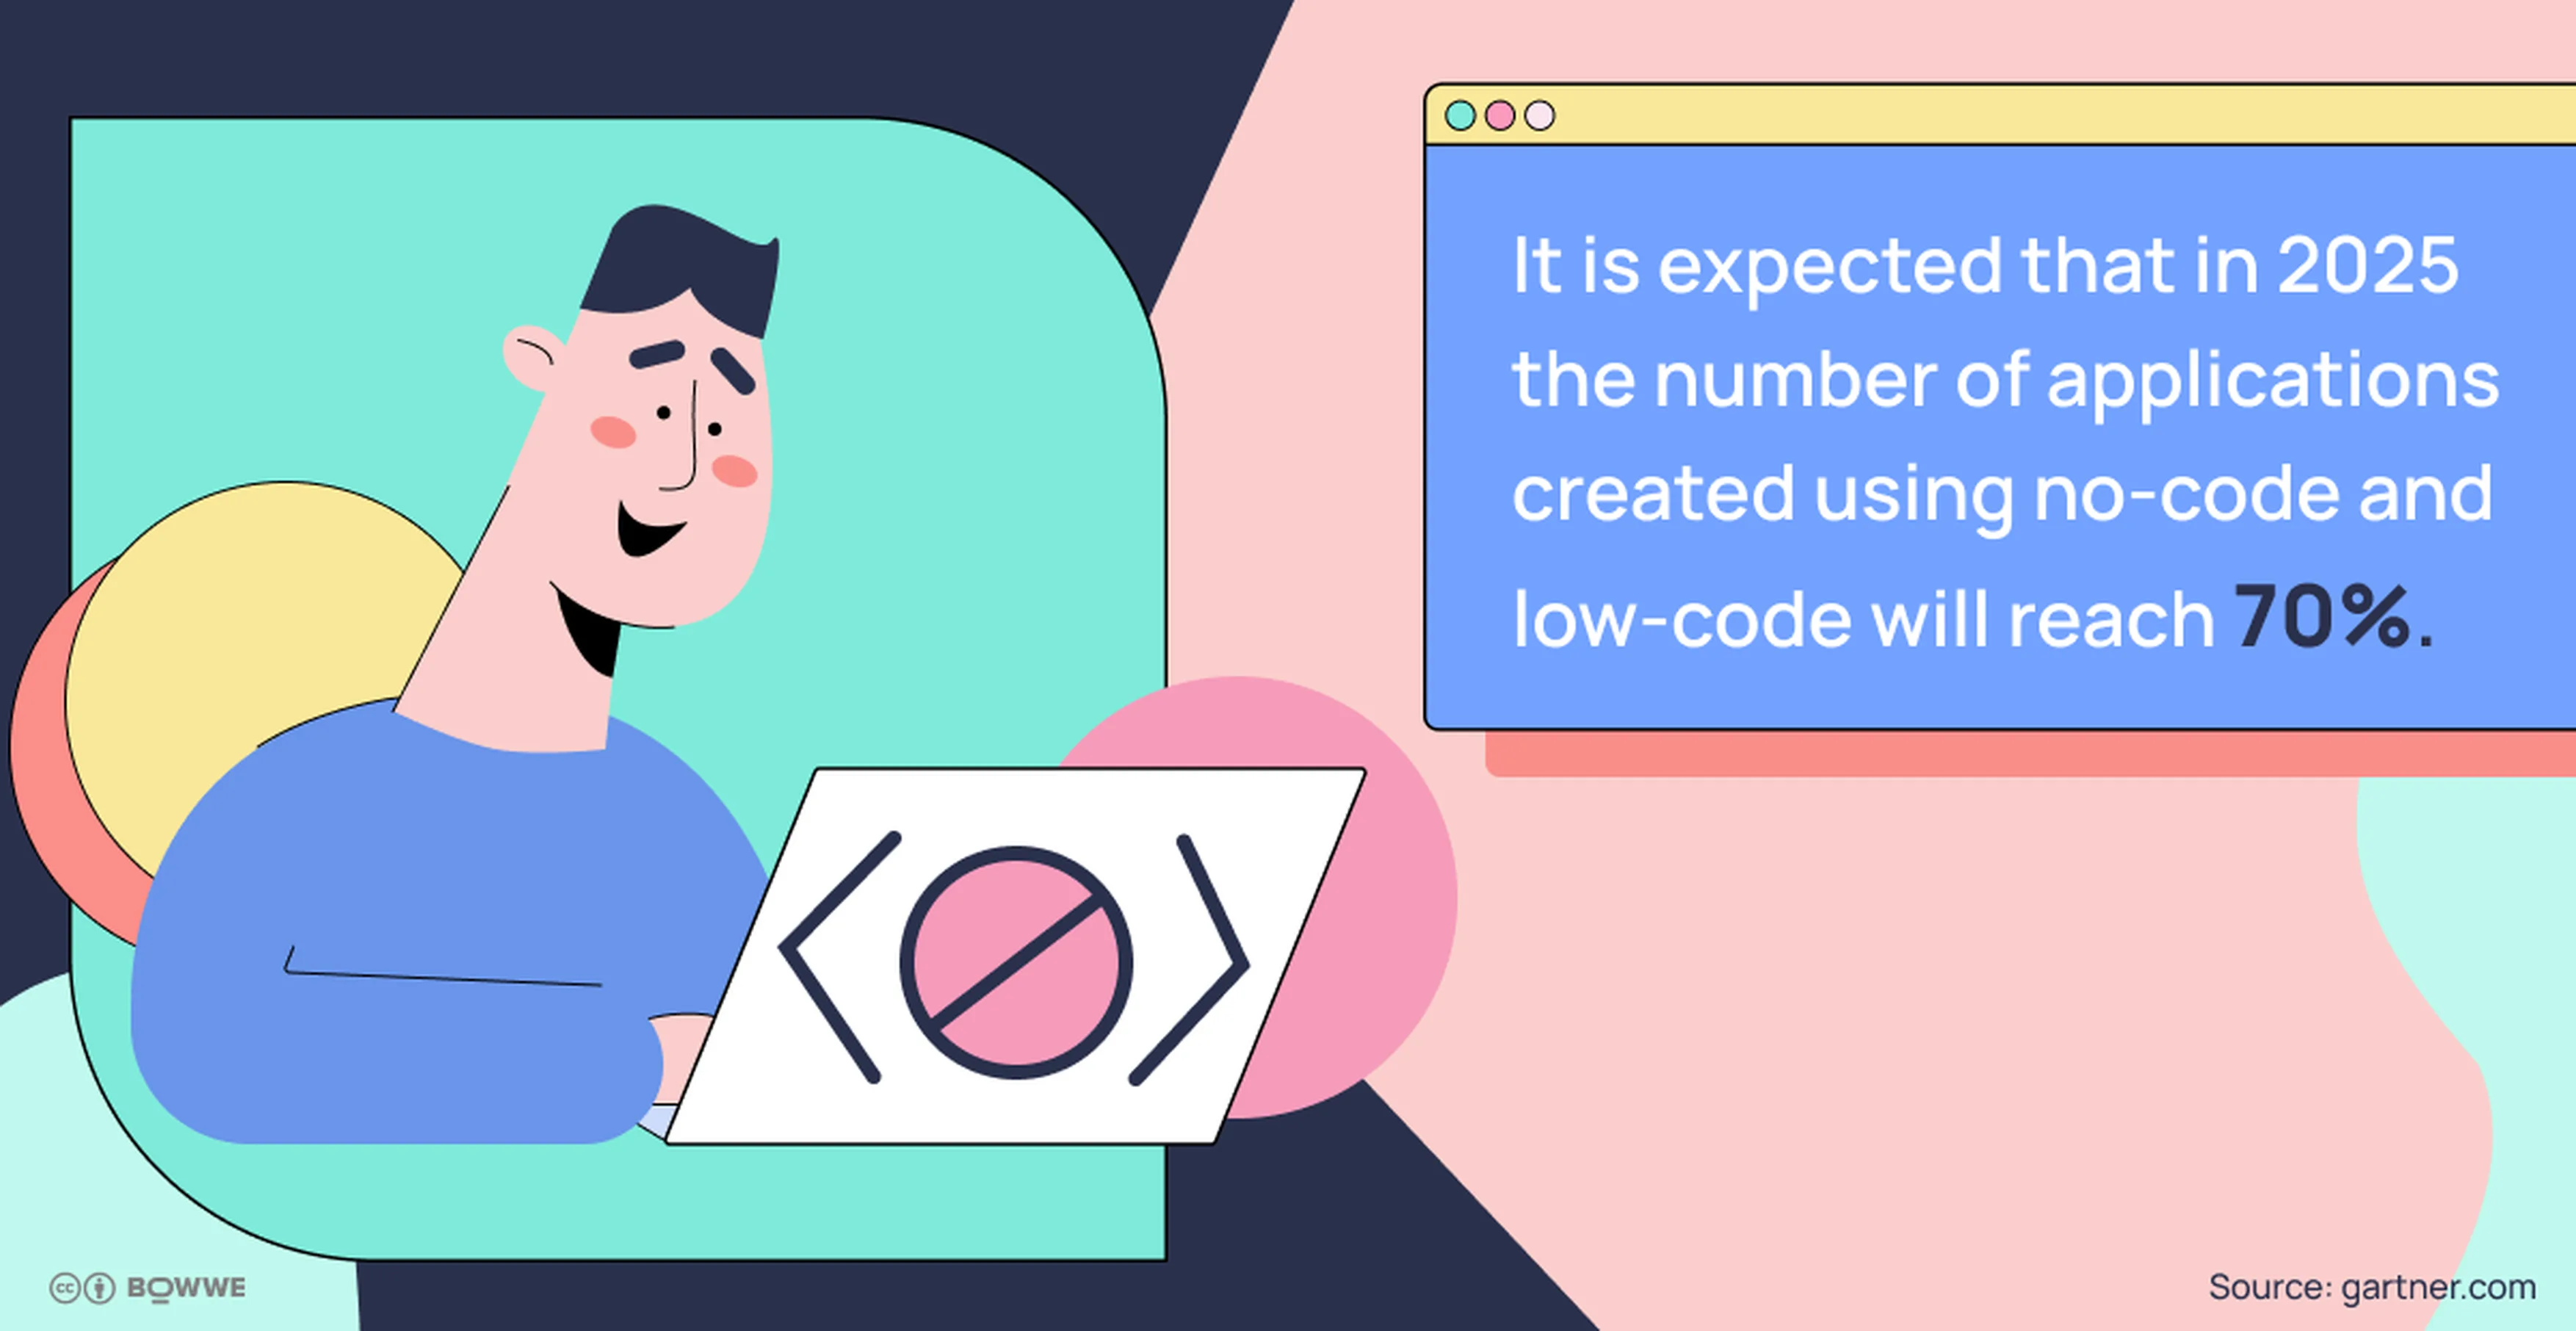 Infografía con fondo degradado, maqueta de aplicación y texto sobre cuántas aplicaciones se crearán con código bajo y sin código